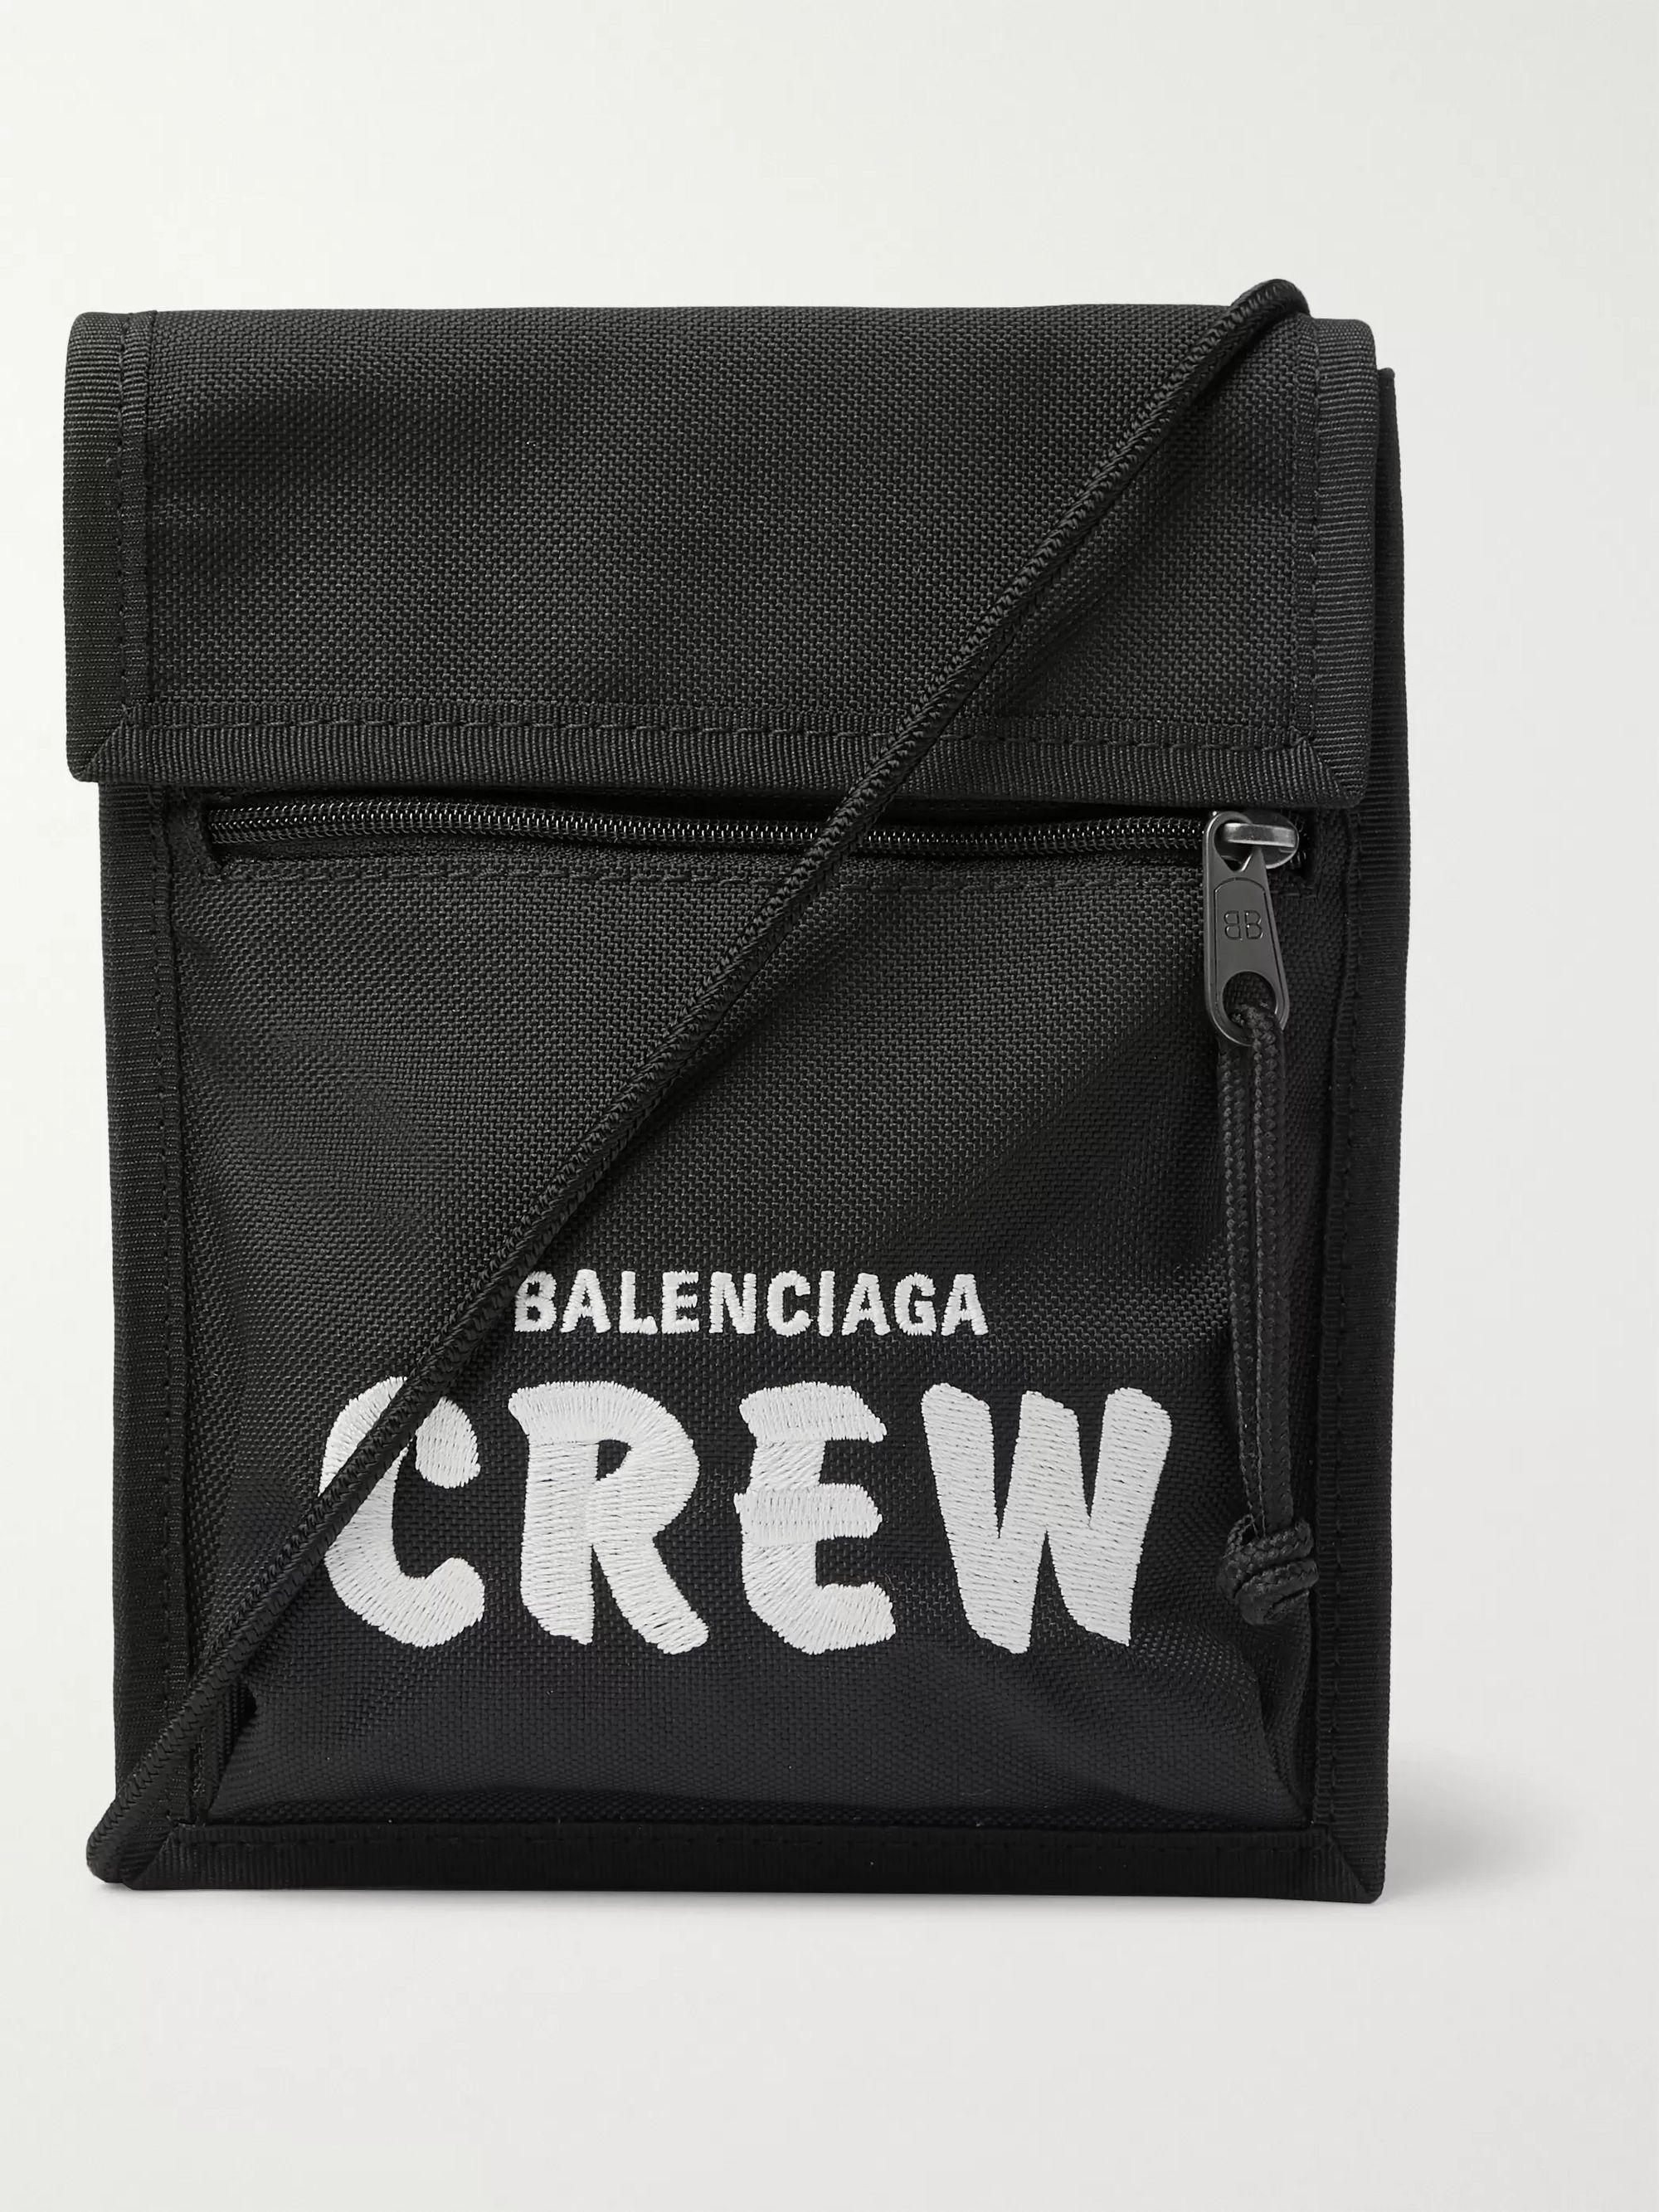 are balenciaga bags made in italy